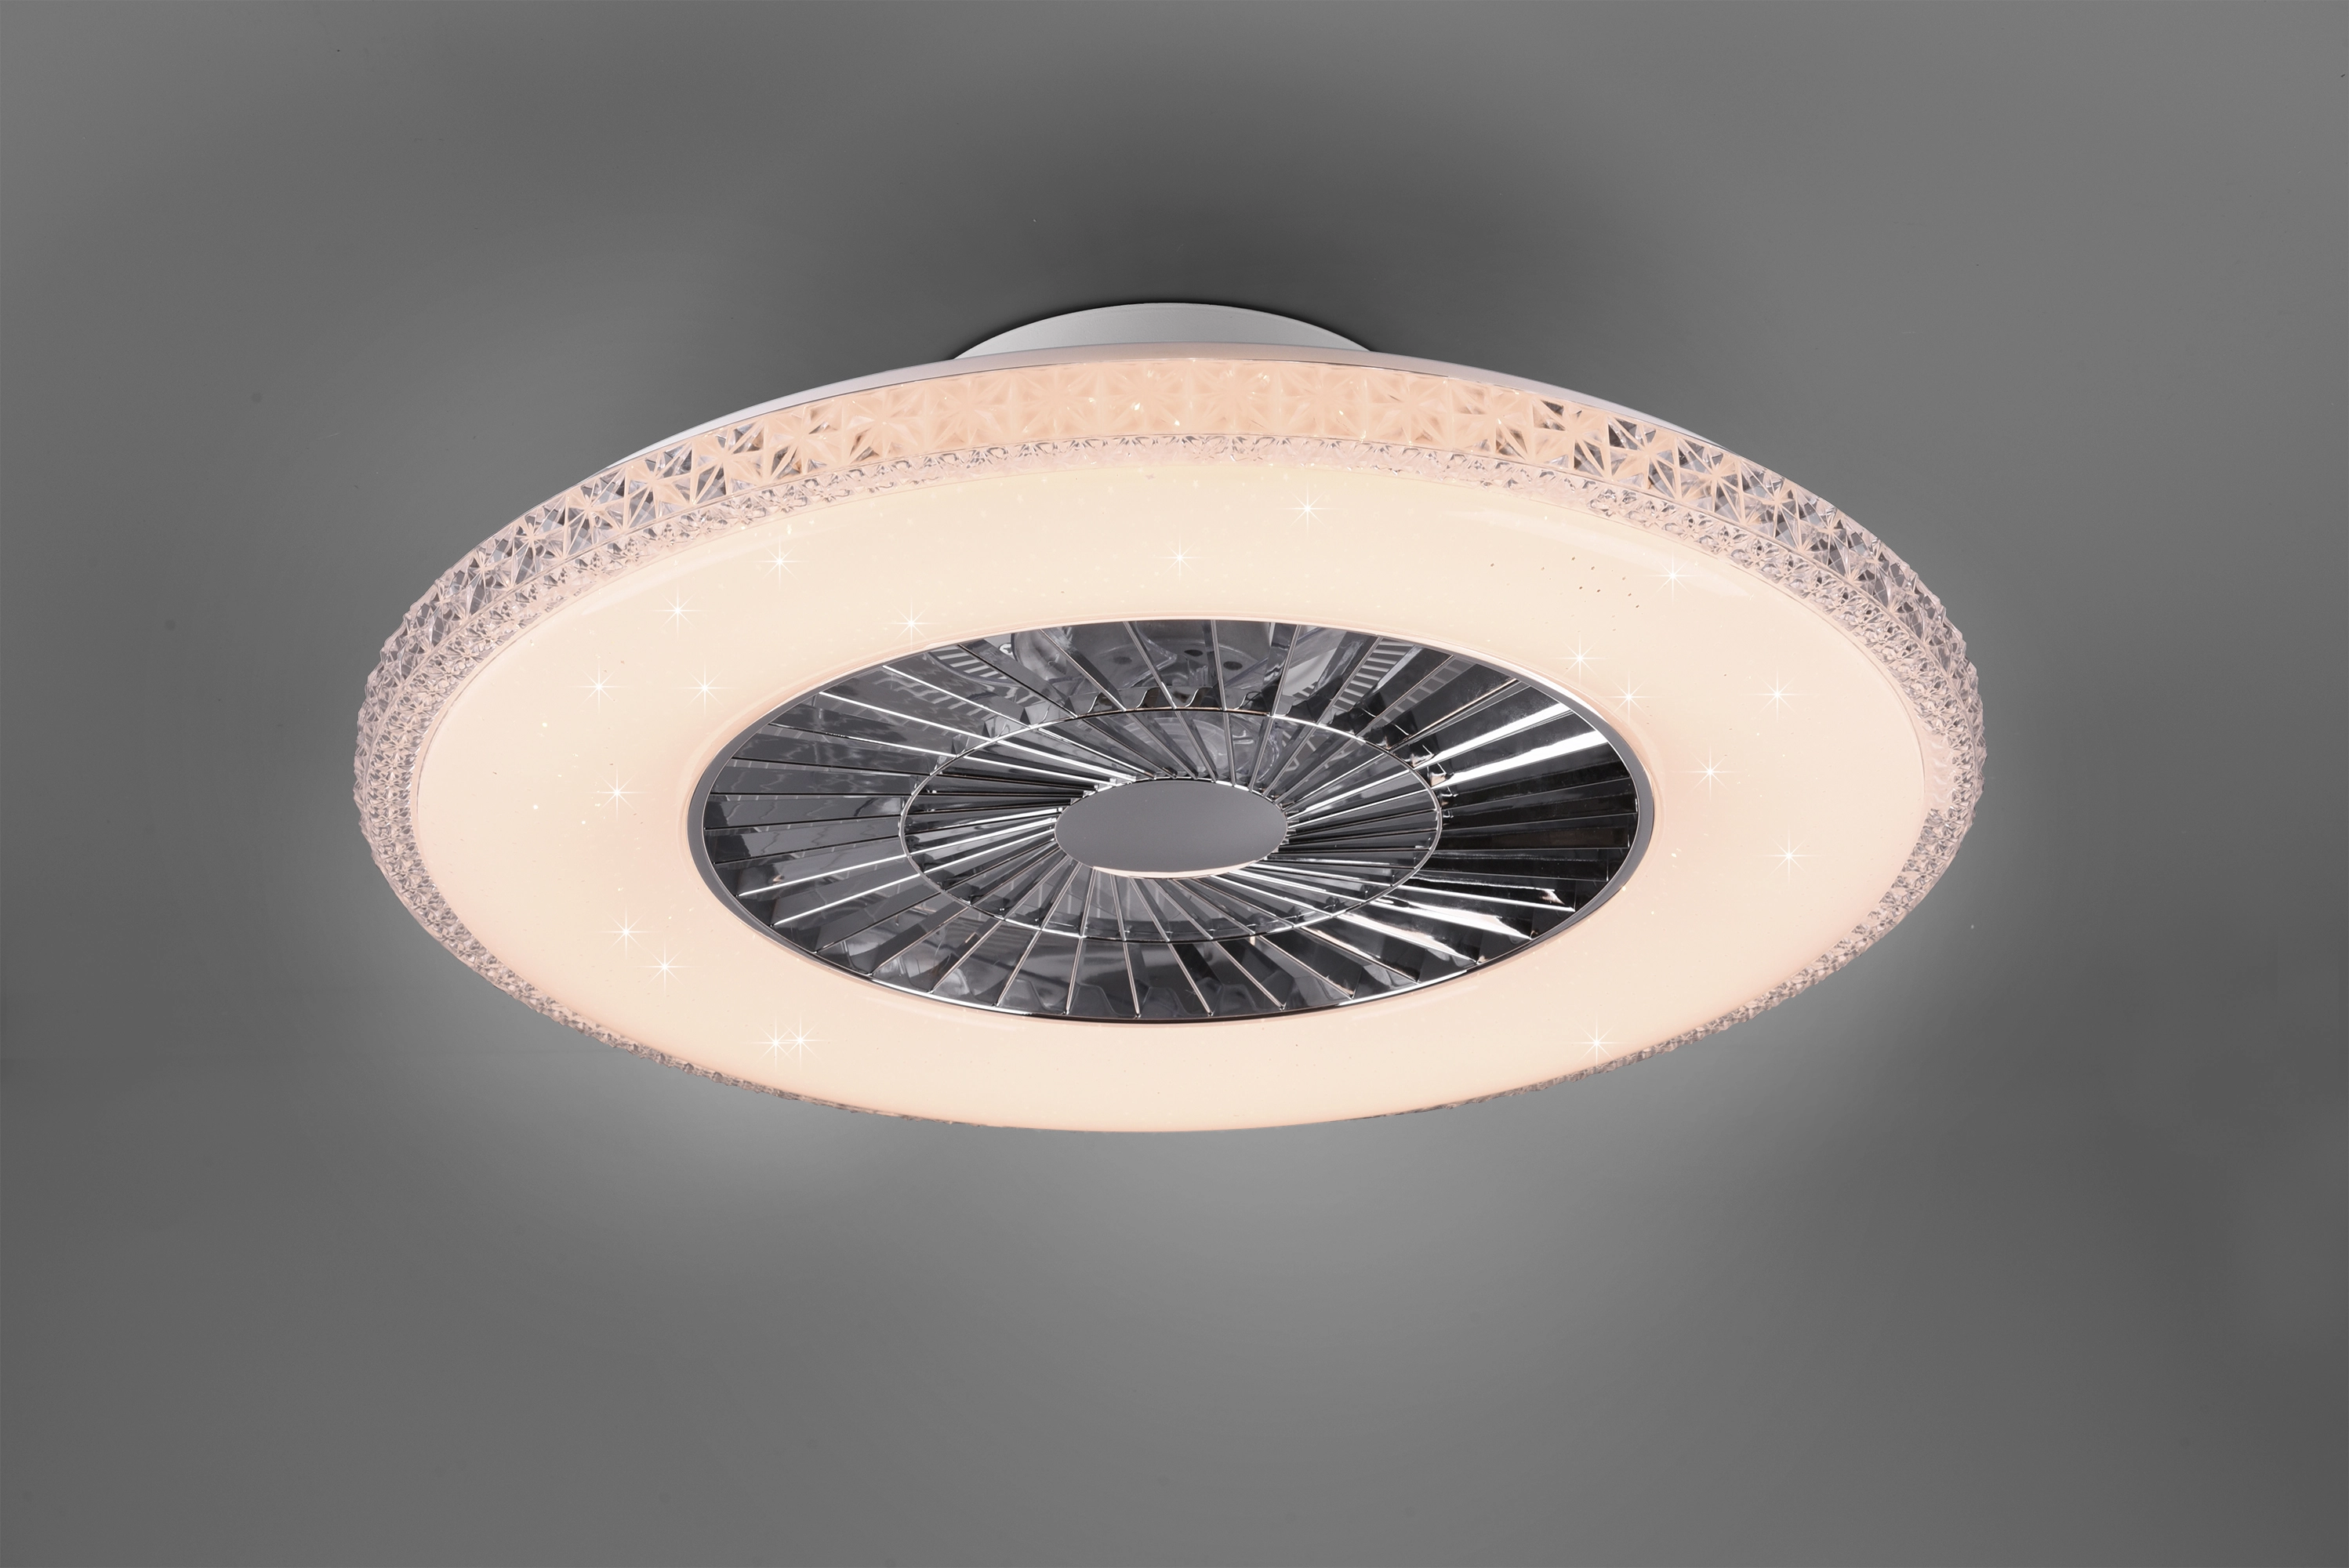 Plafoniera moderna a led con ventilatore da soffitto cambia 3 luci  dimmerabile c - - LAMPADARI DI DESIGN E PLAFONIERE LED A SOFFITTO